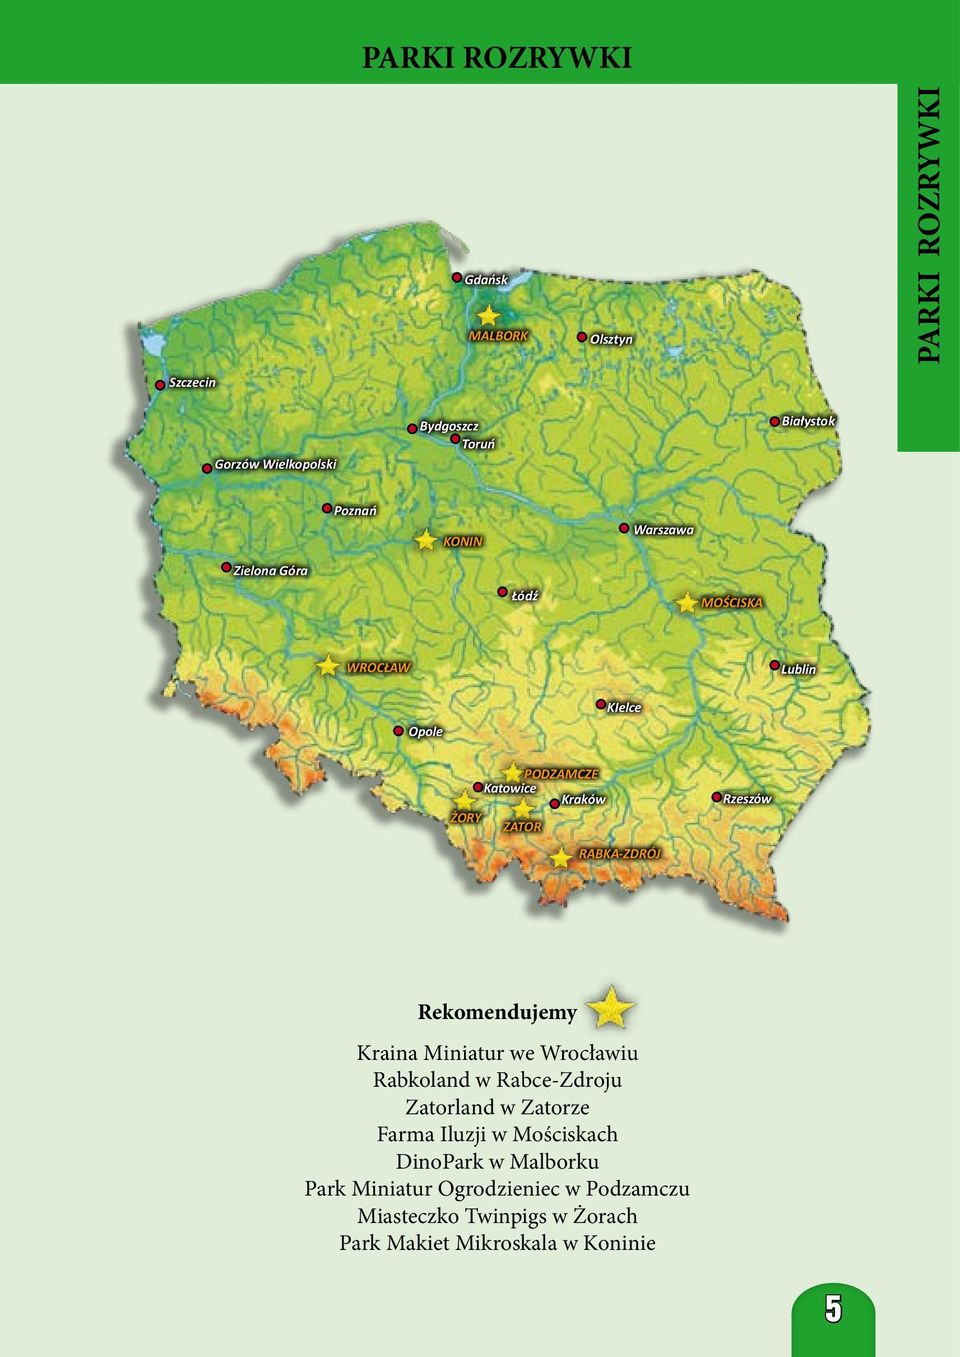 Rzeszów Rekomendujemy Kraina Miniatur we Wrocławiu Rabkoland w Rabce-Zdroju Zatorland w Zatorze Farma Iluzji w